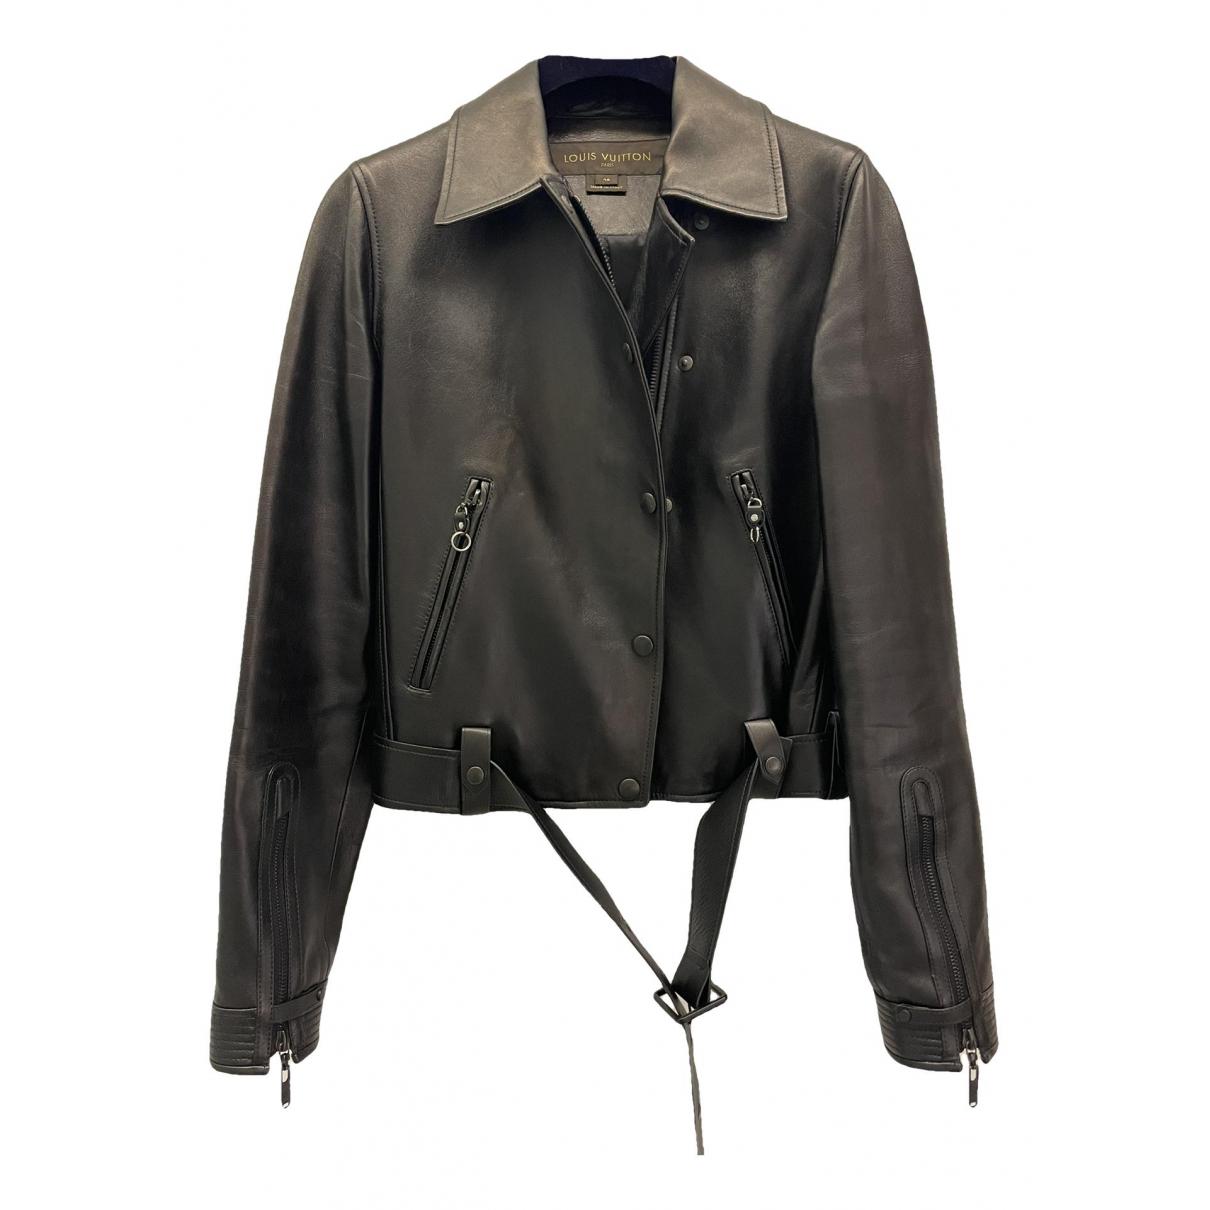 Authentic LOUIS VUITTON Leather jacket #260-001-827-2864